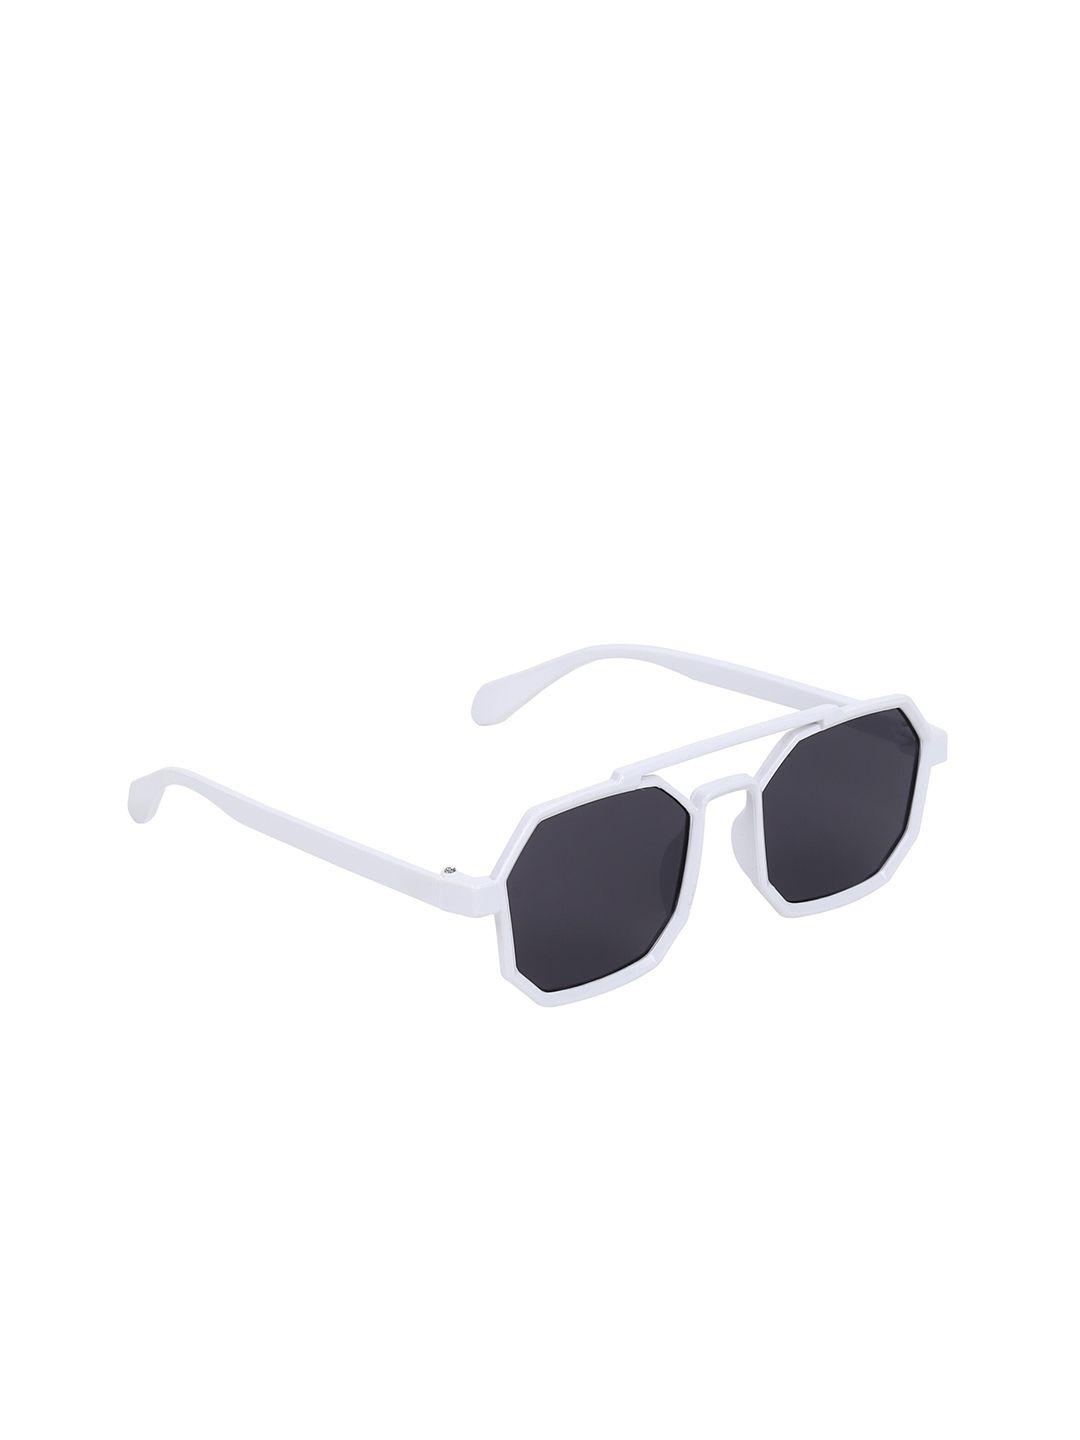 garth unisex black lens & white aviator sunglasses with uv protected lens